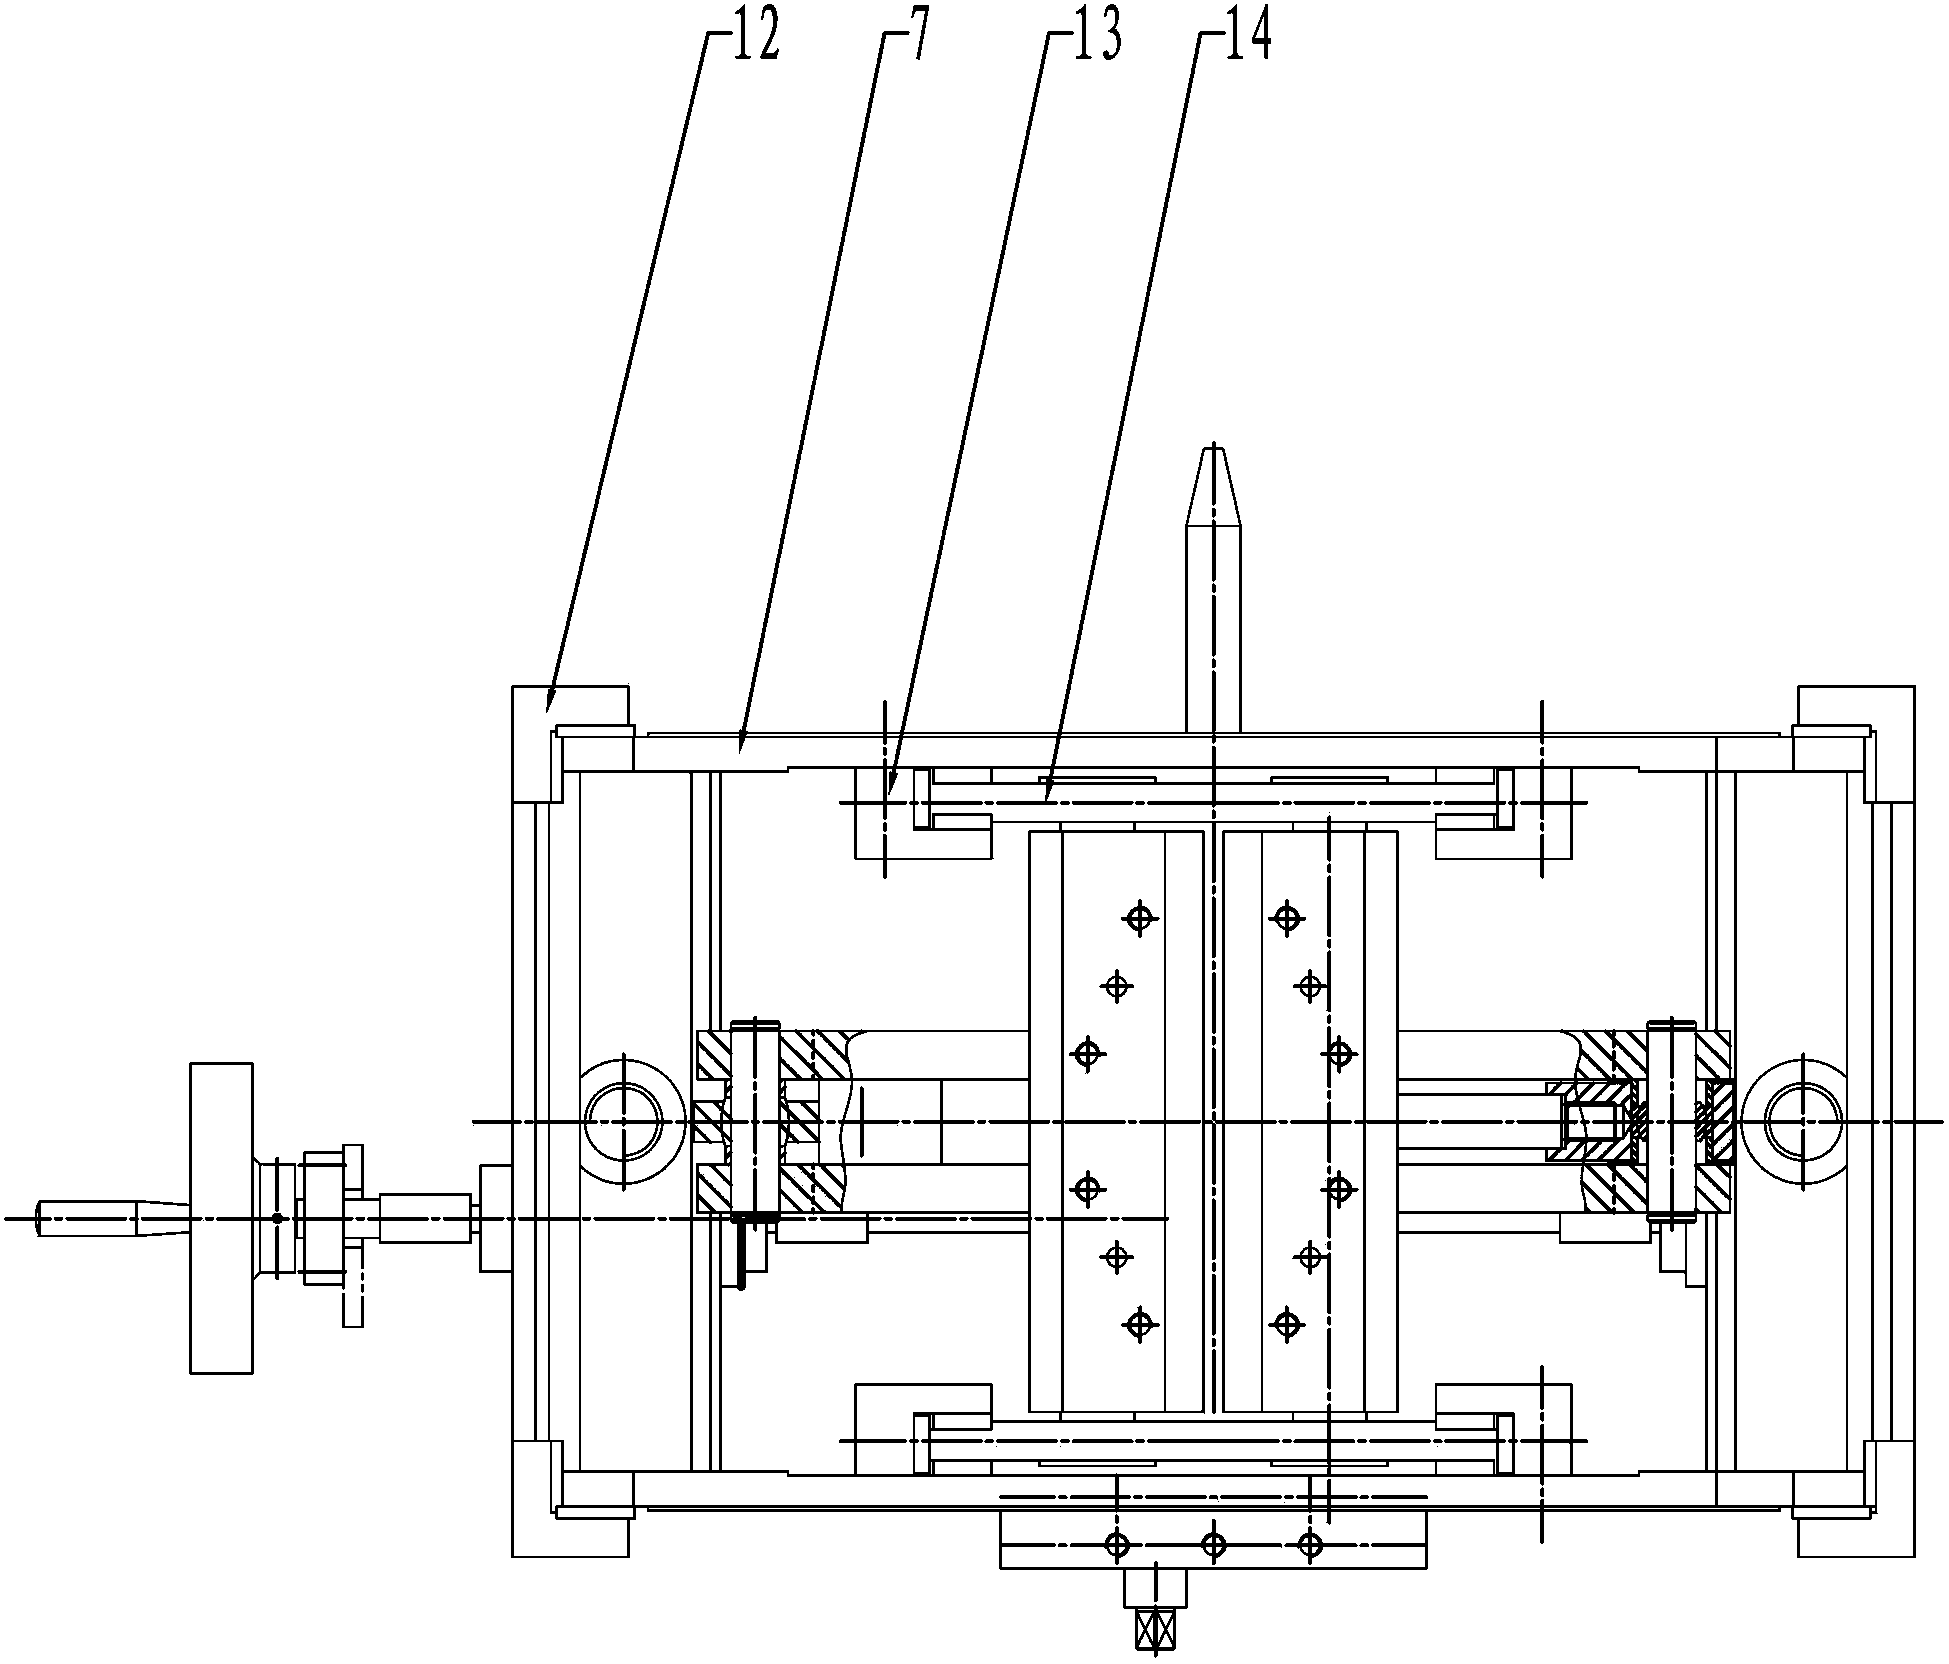 Lifting mechanism of steel bar truss bending component